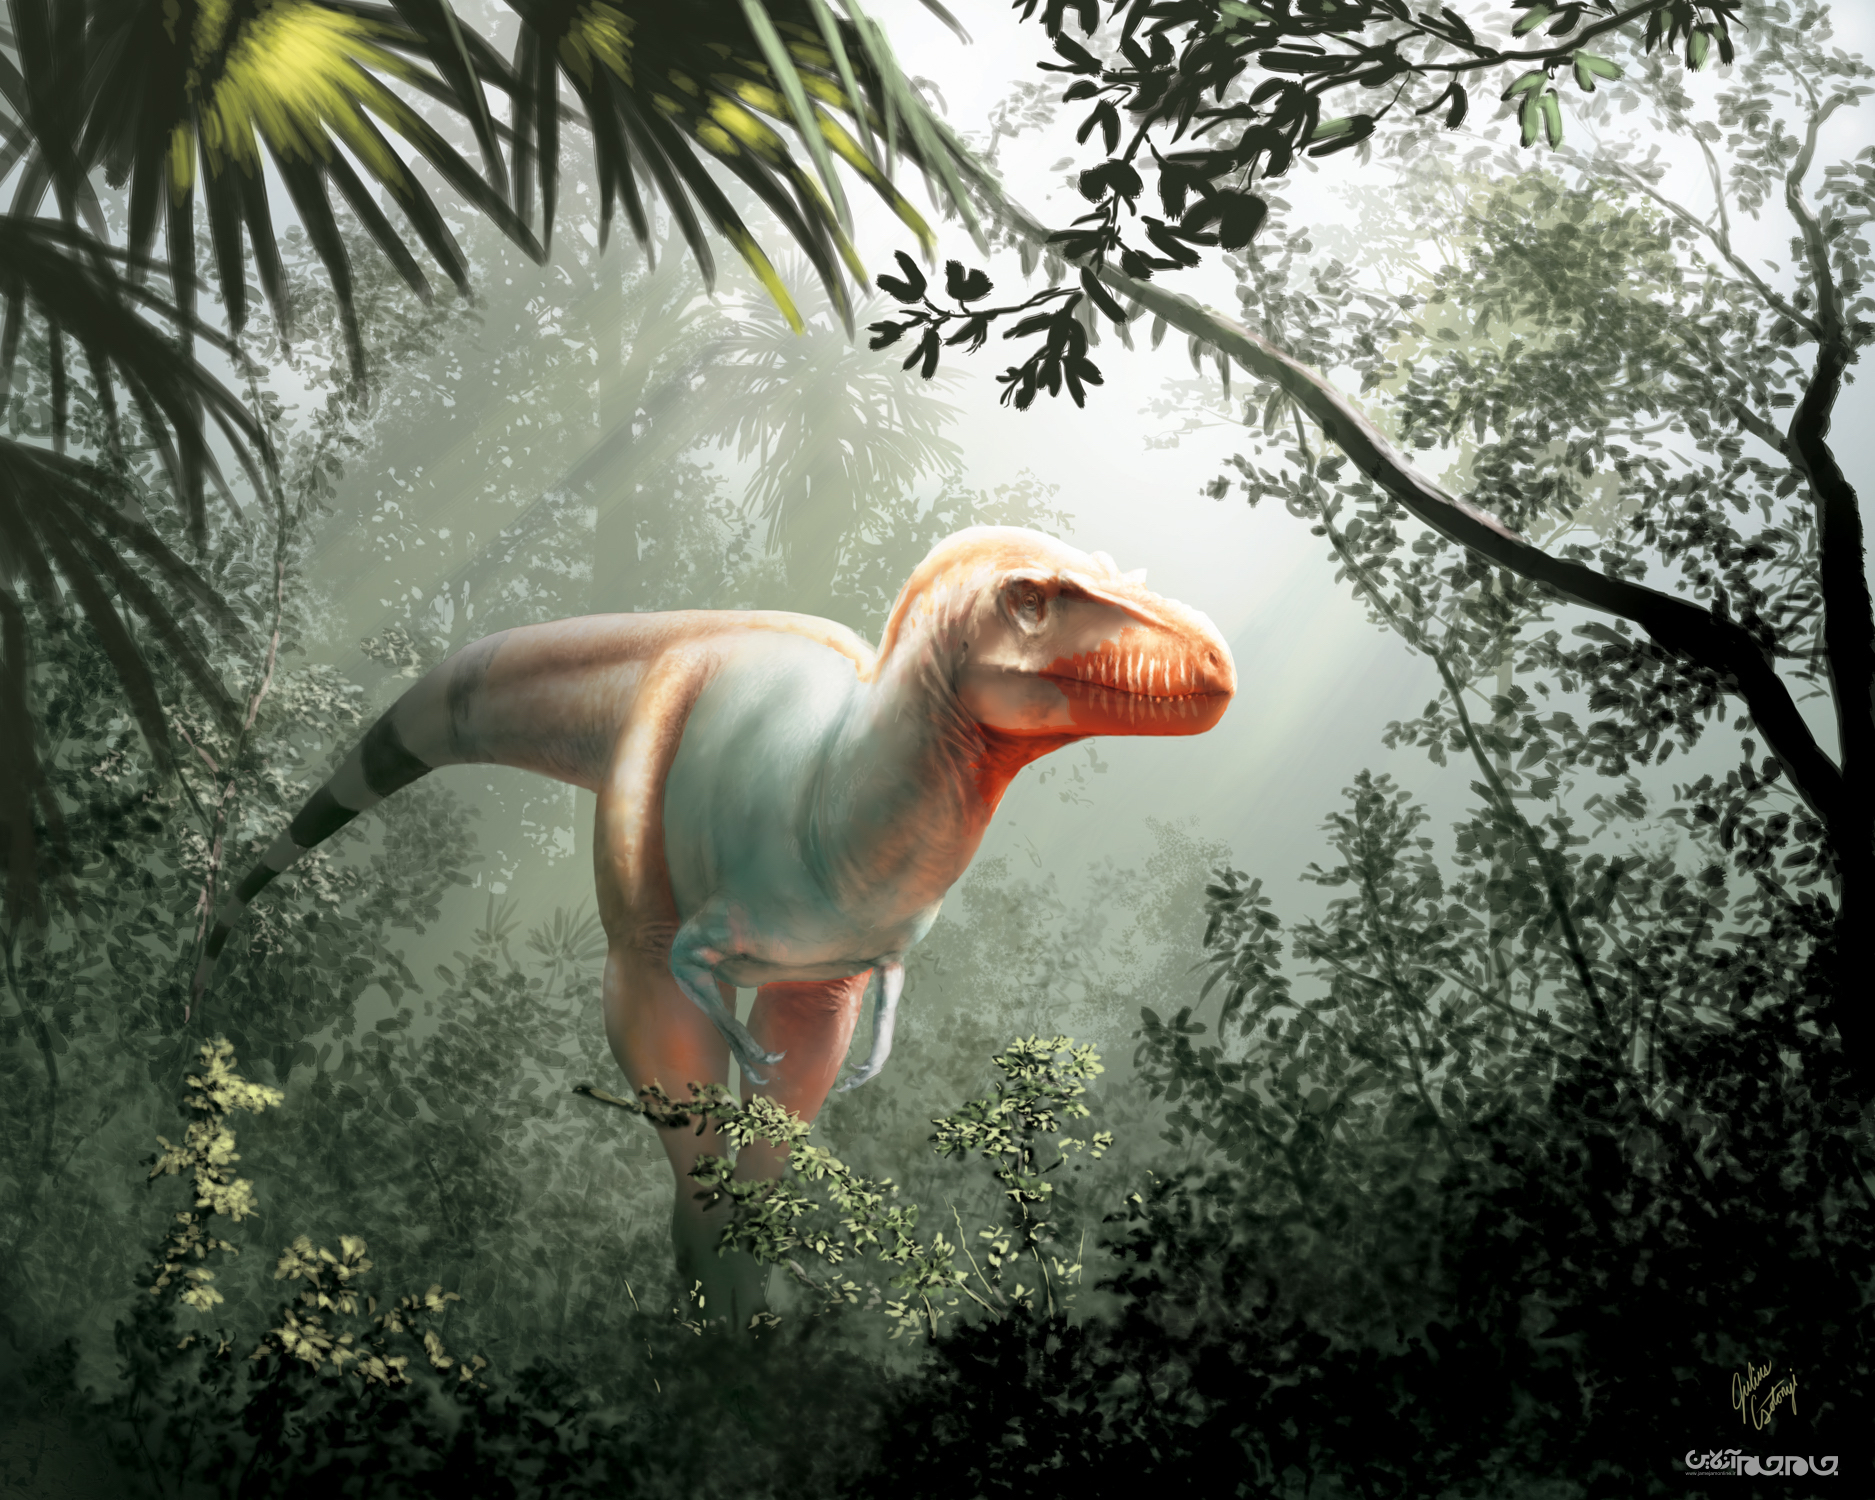 ۱۰ کشف جالب دانشمندان درباره دایناسورها در سال ۲۰۲۰+عکس